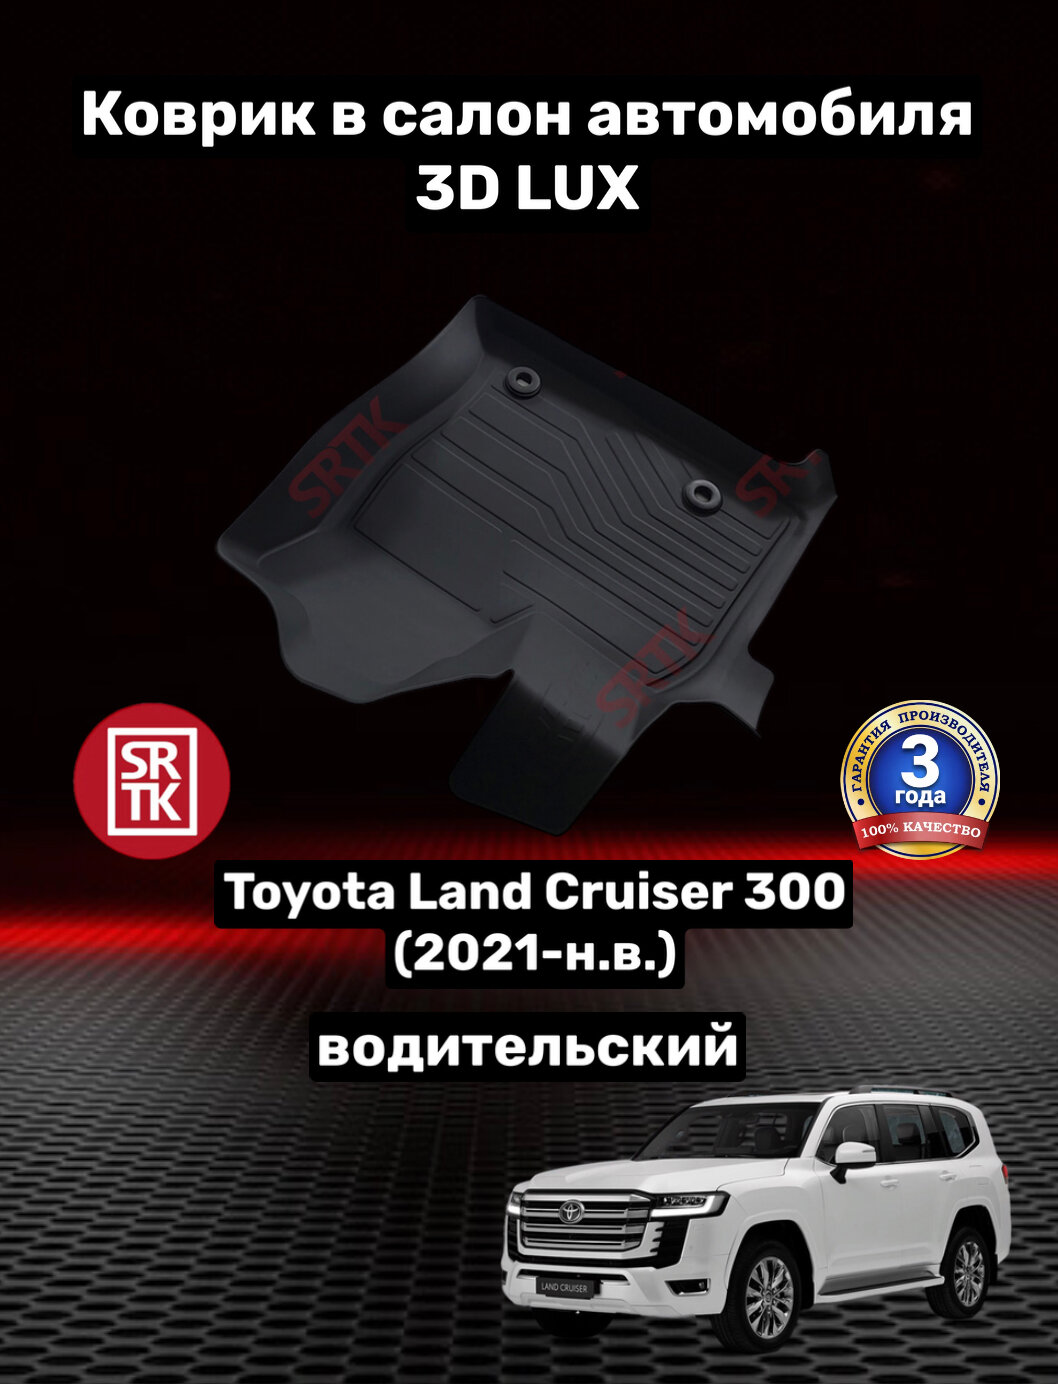 Коврик резиновый для Тойота Ленд Крузер 300 (2021-)/Toyota Land Cruiser 300 (2021-) 3D LUX SRTK (Саранск) водительский в салон